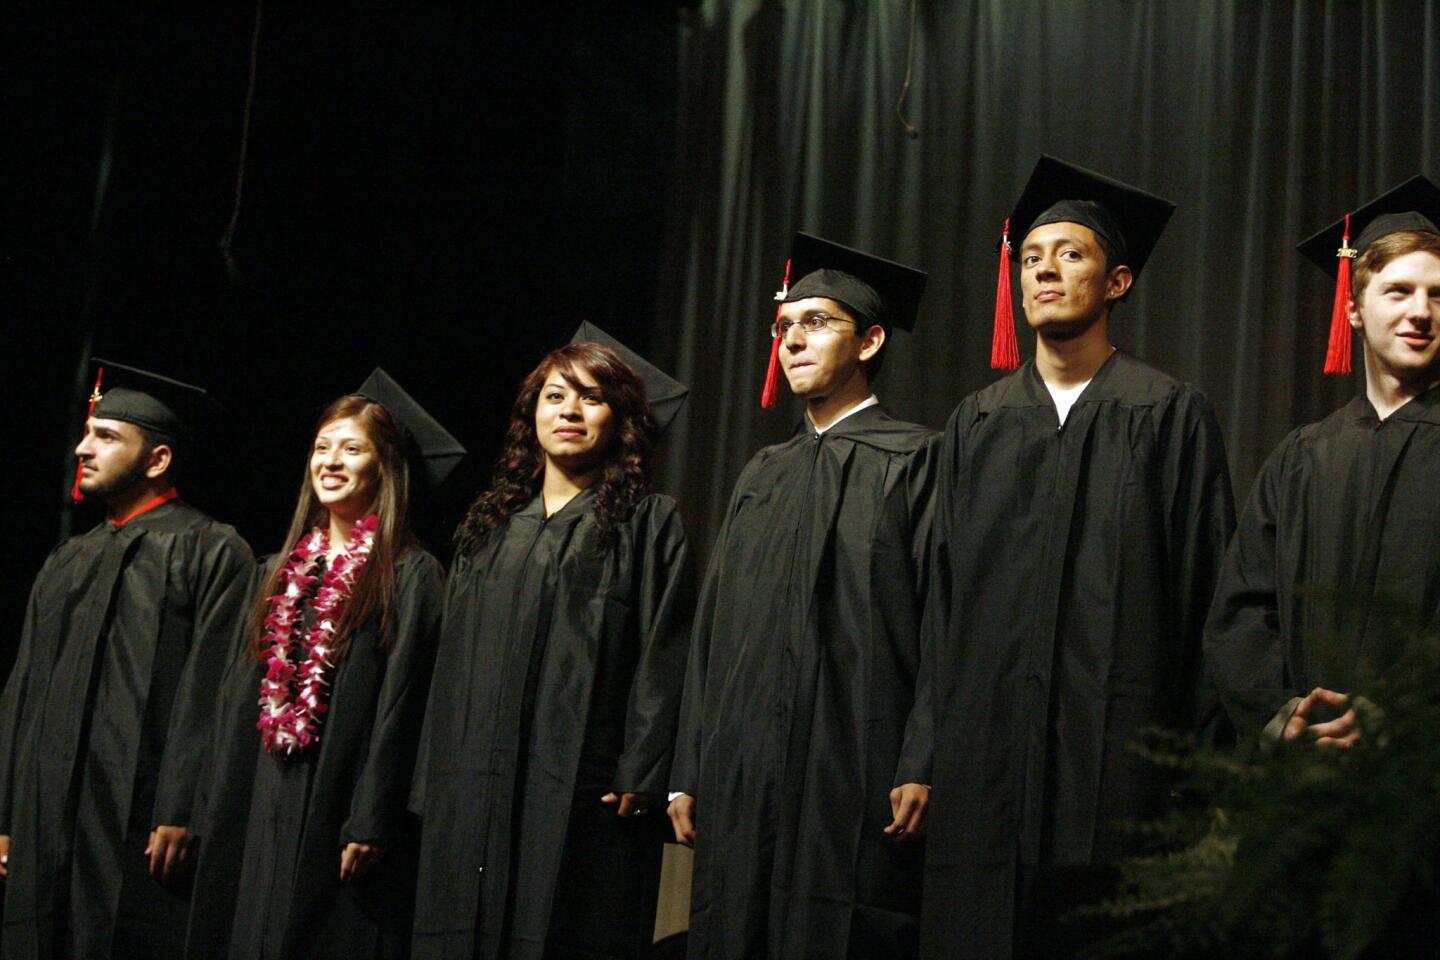 Monterey's graduation